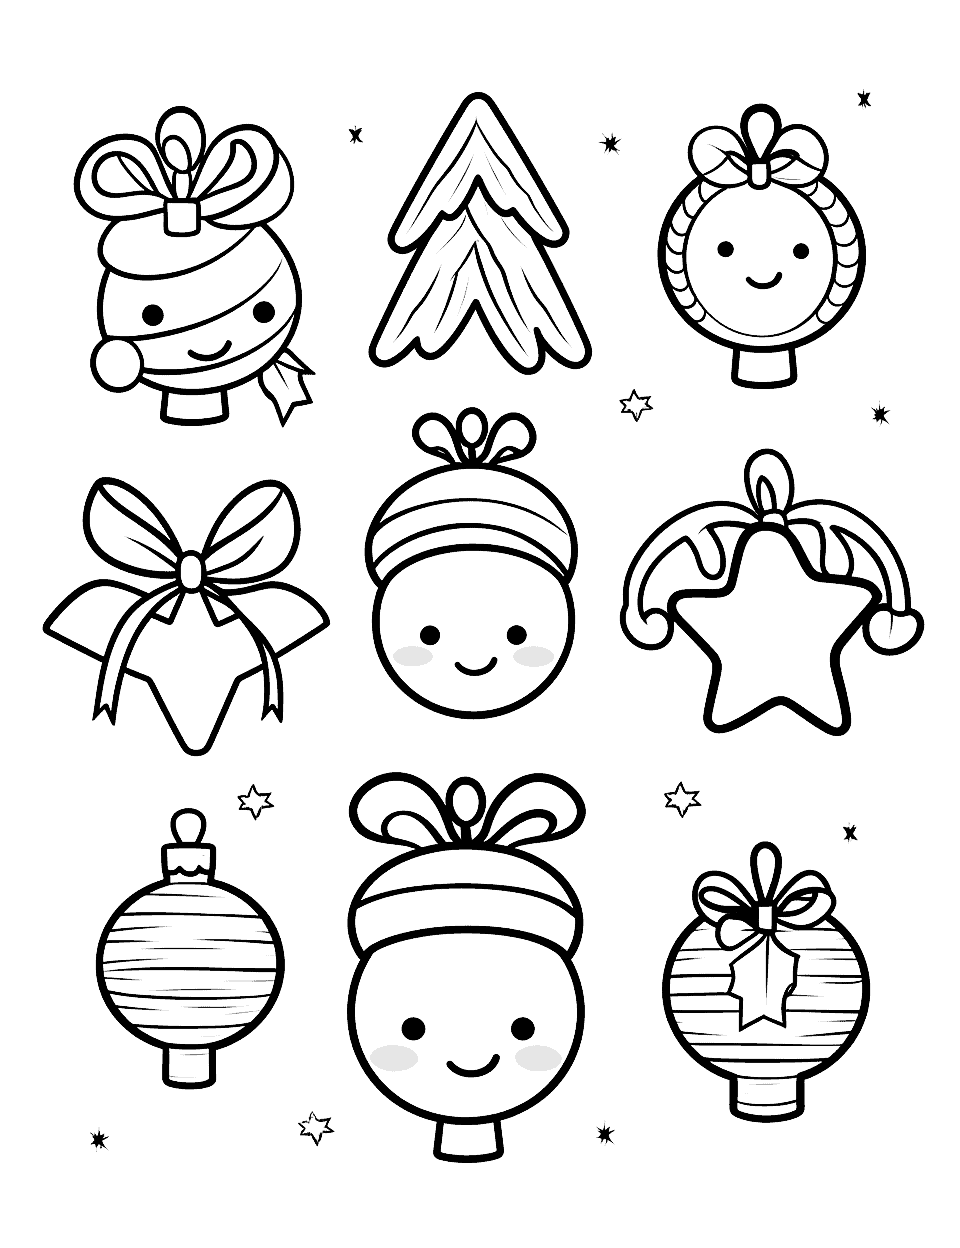 Kawaii Christmas Ornaments Coloring Page - A set of kawaii-inspired Christmas ornaments including a reindeer, Santa, and Christmas tree.